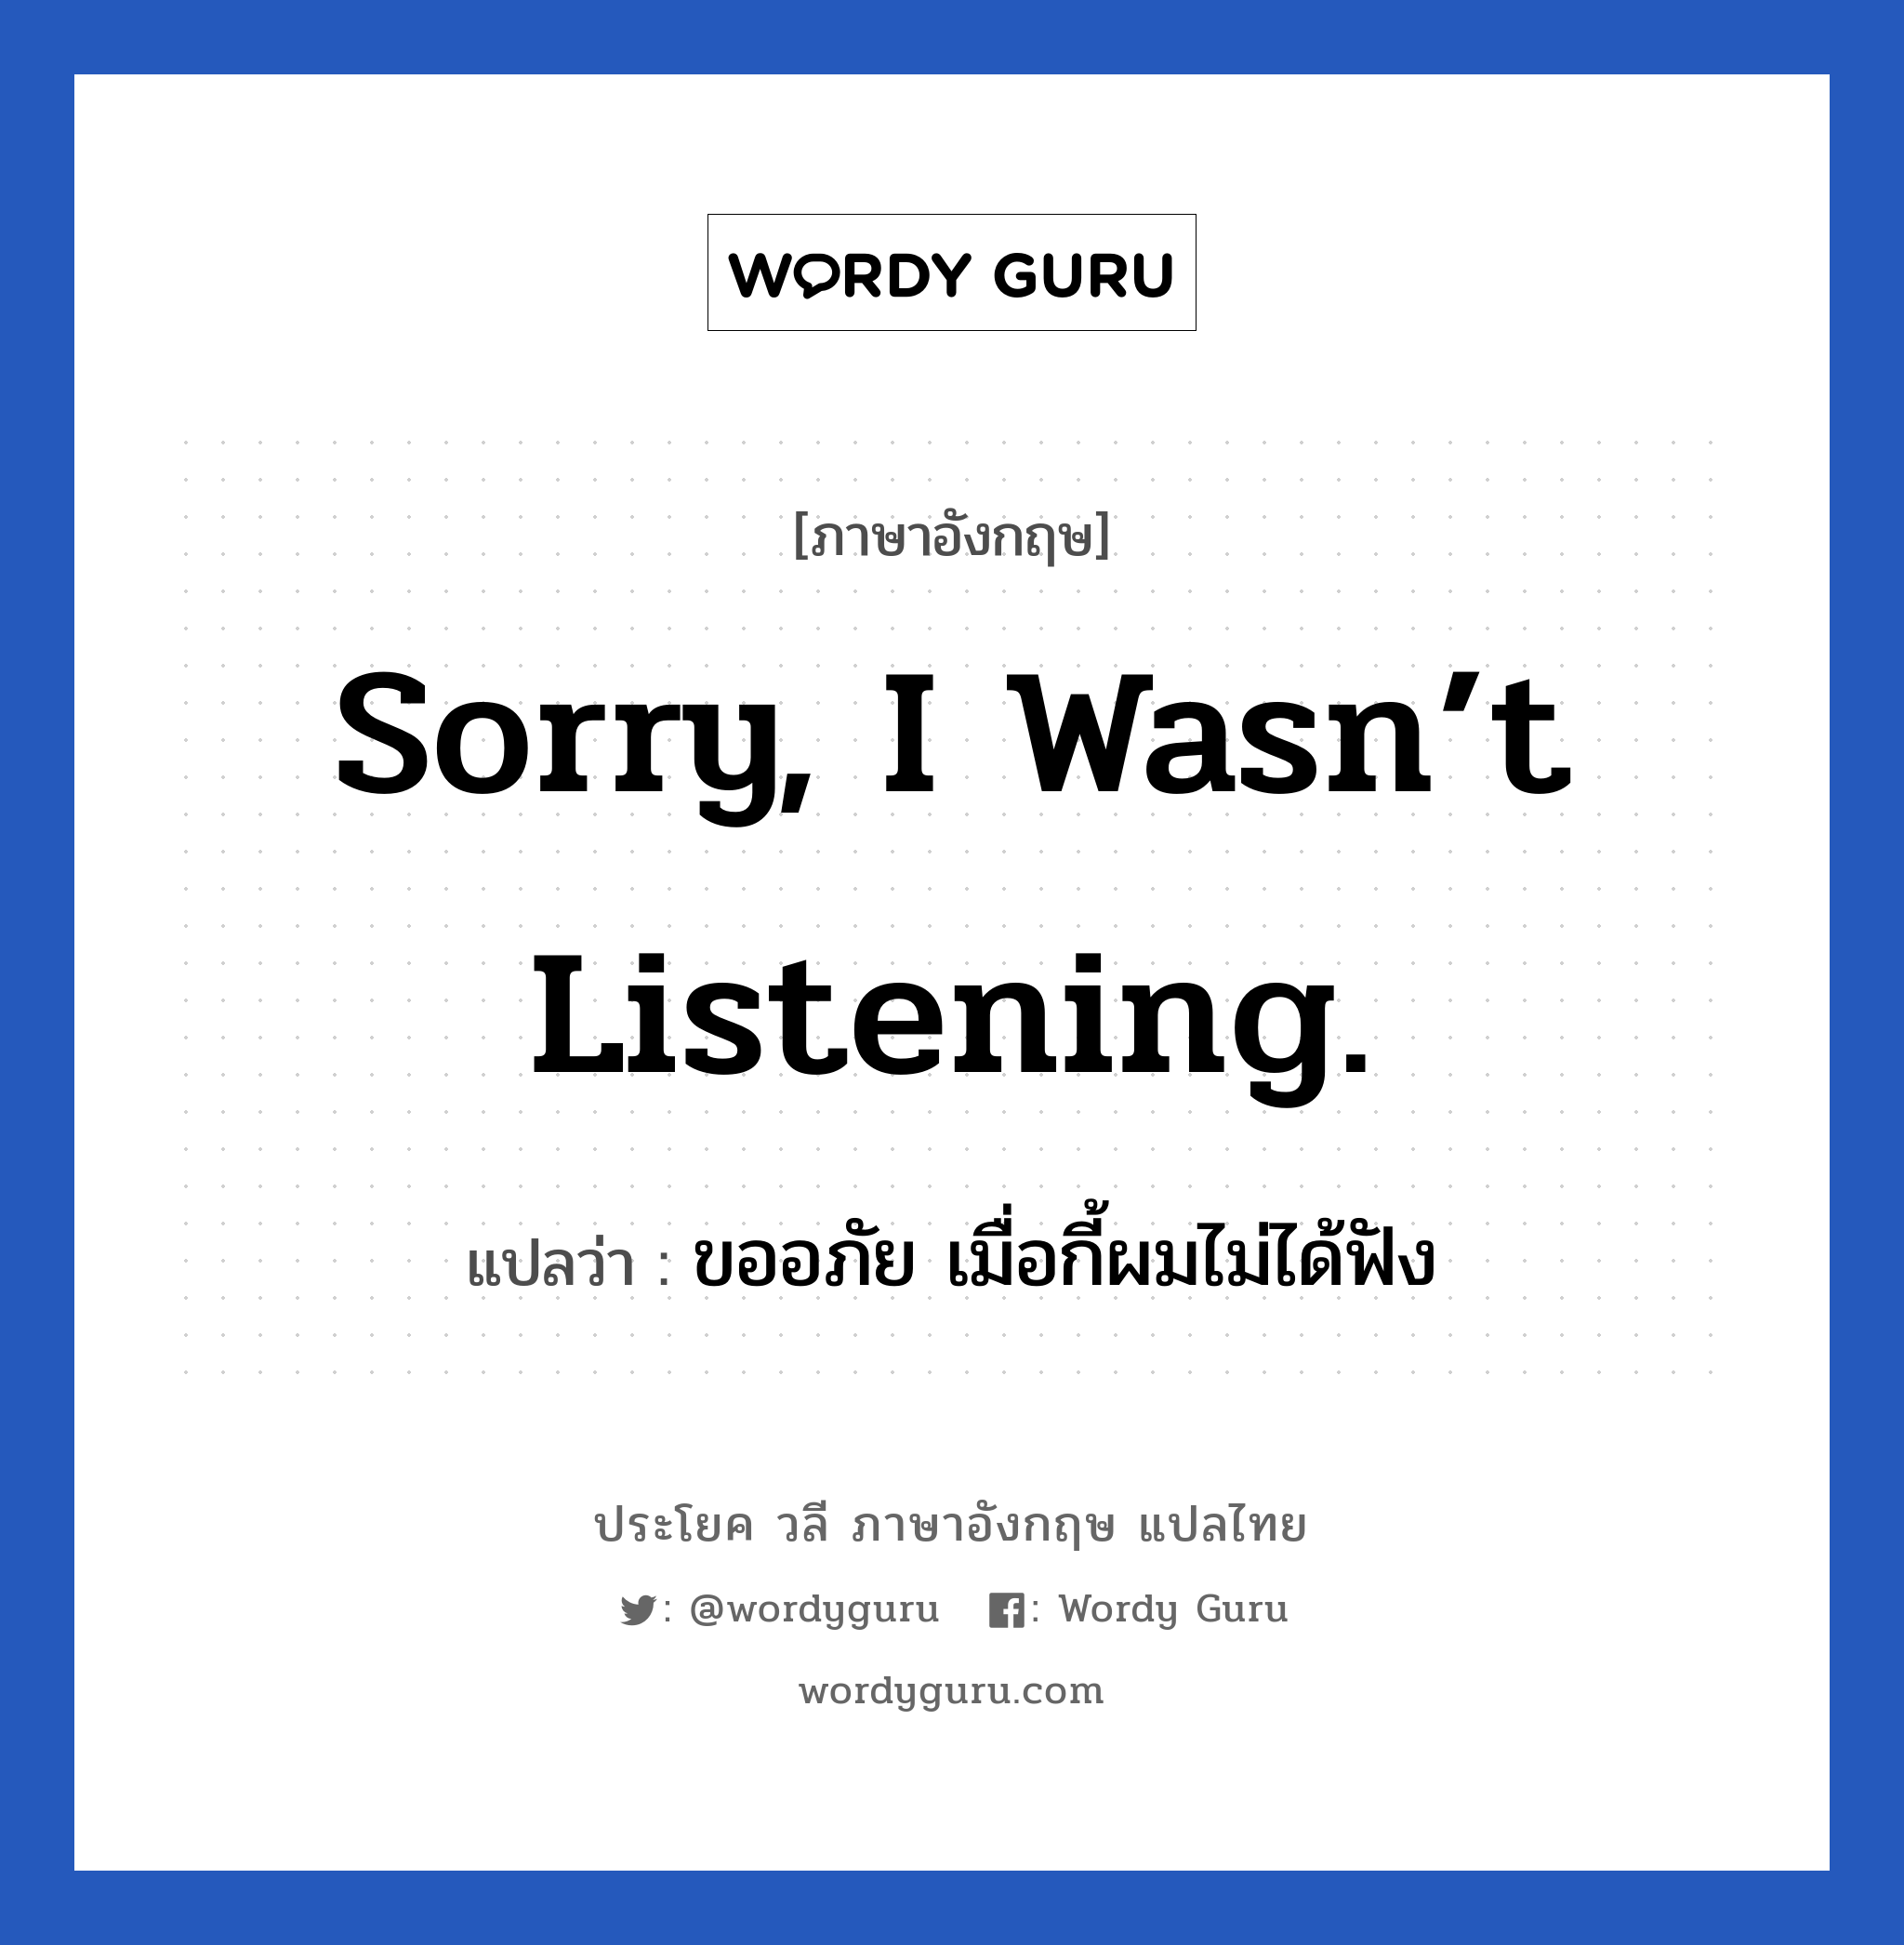 ขออภัย เมื่อกี้ผมไม่ได้ฟัง ภาษาอังกฤษ?, วลีภาษาอังกฤษ ขออภัย เมื่อกี้ผมไม่ได้ฟัง แปลว่า Sorry, I wasn’t listening.